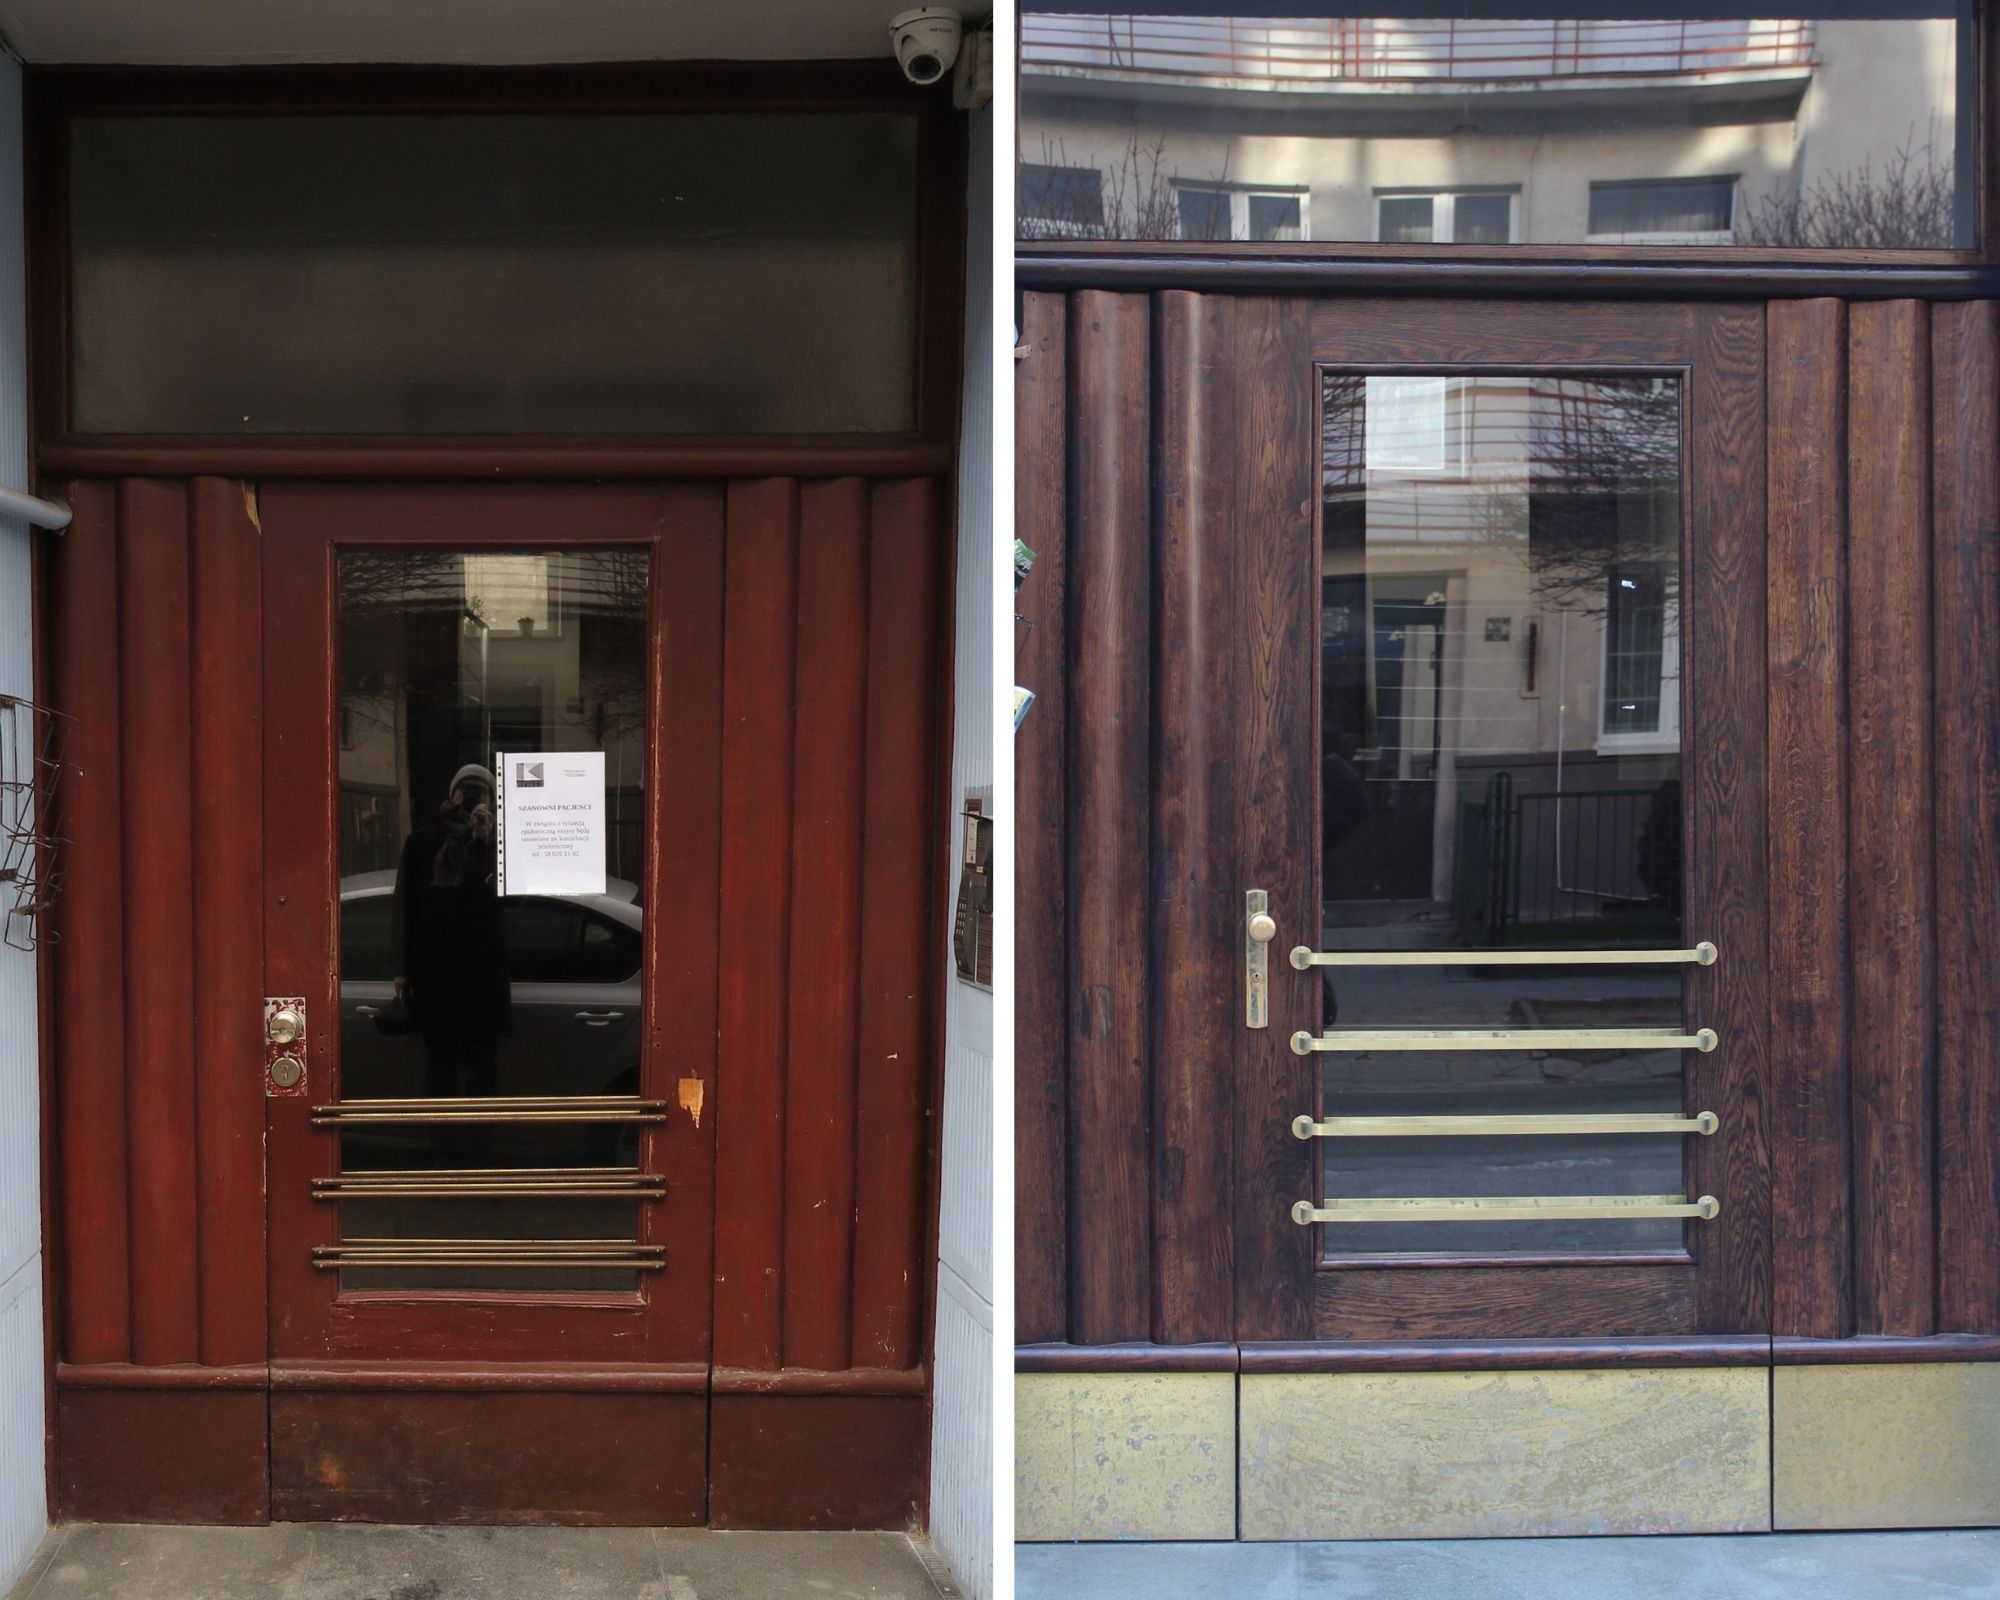 Drzwi do budynku przy ul. Bema 4 przed i po pracach konserwatorskich, fot. Biuro Miejskiego Konserwatora Zabytków w Gdyni